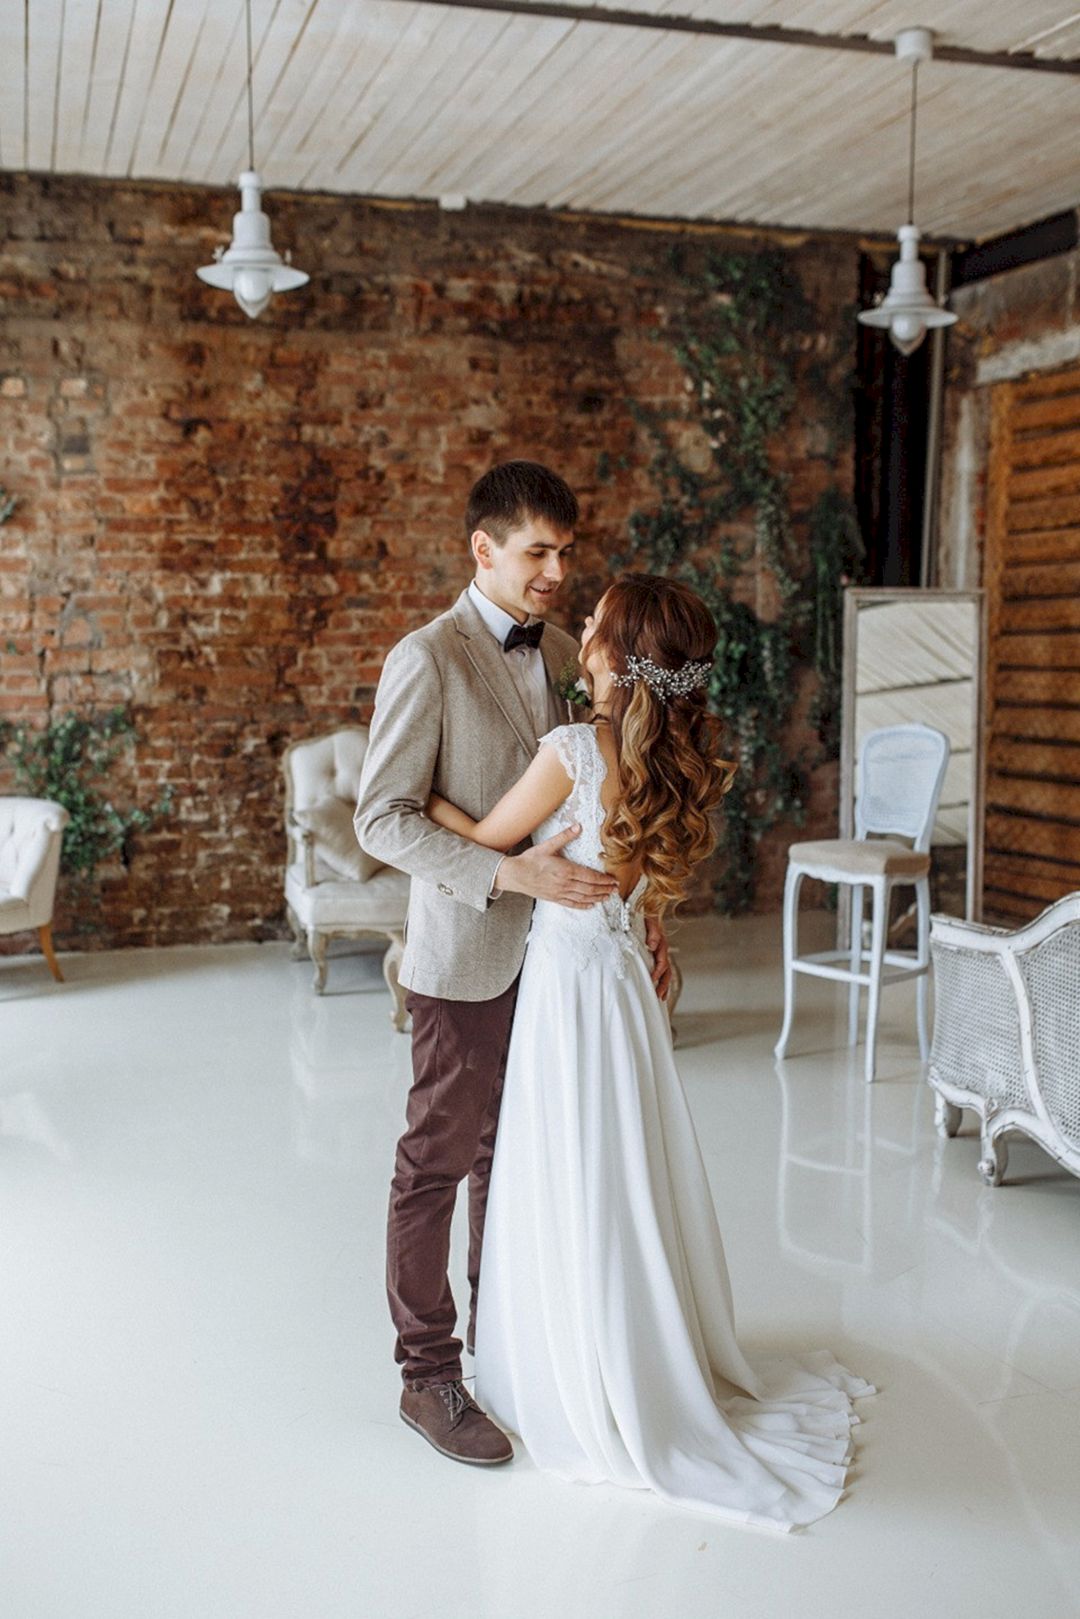 Indoor wedding from weddywood.ru